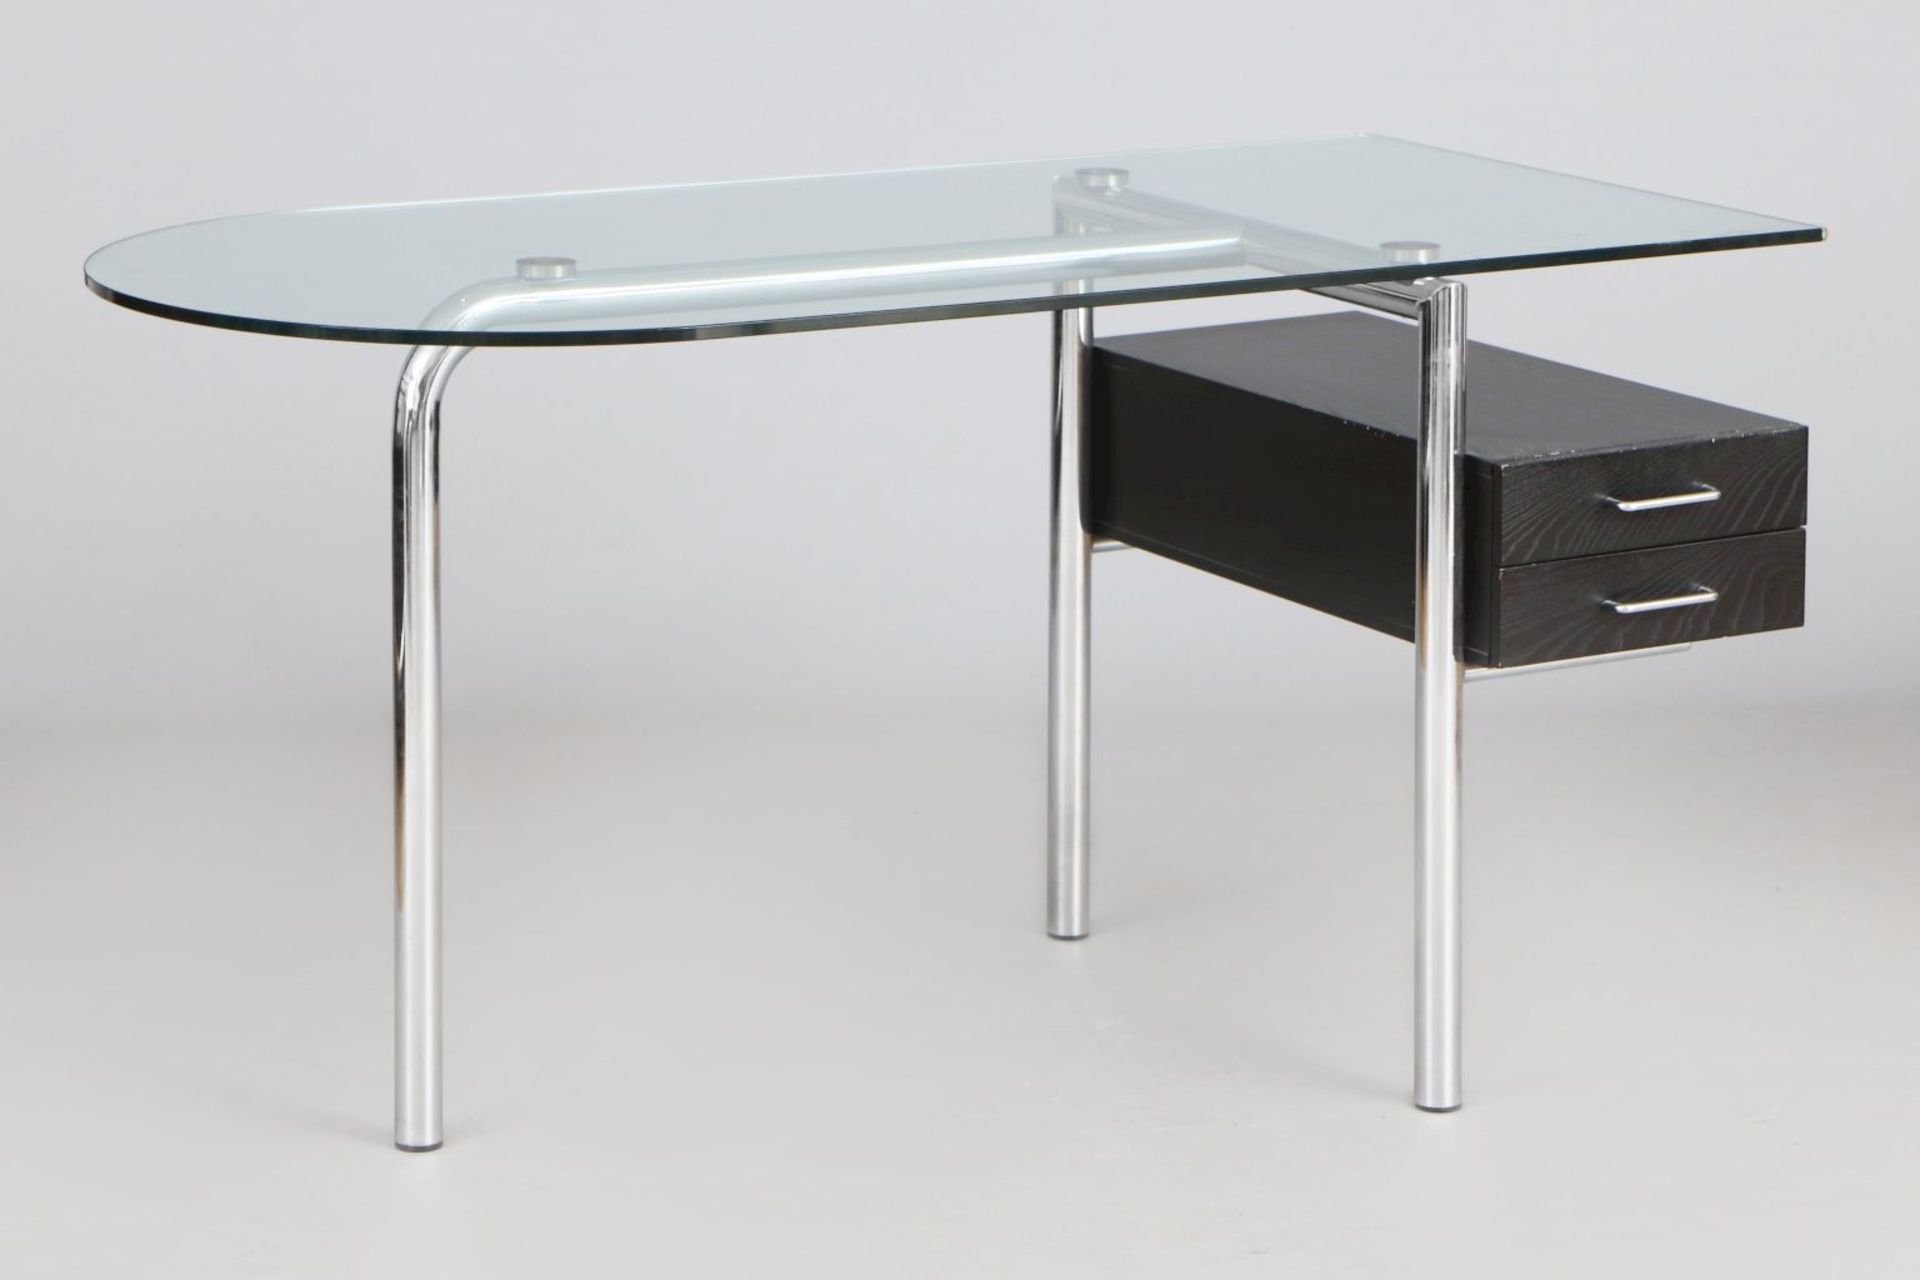 MIRTO Schreibtisch im Stile des Bauhausverchromtes Stahlrohr, Klarglasplatte, 2-schübiger Schu - Image 3 of 4